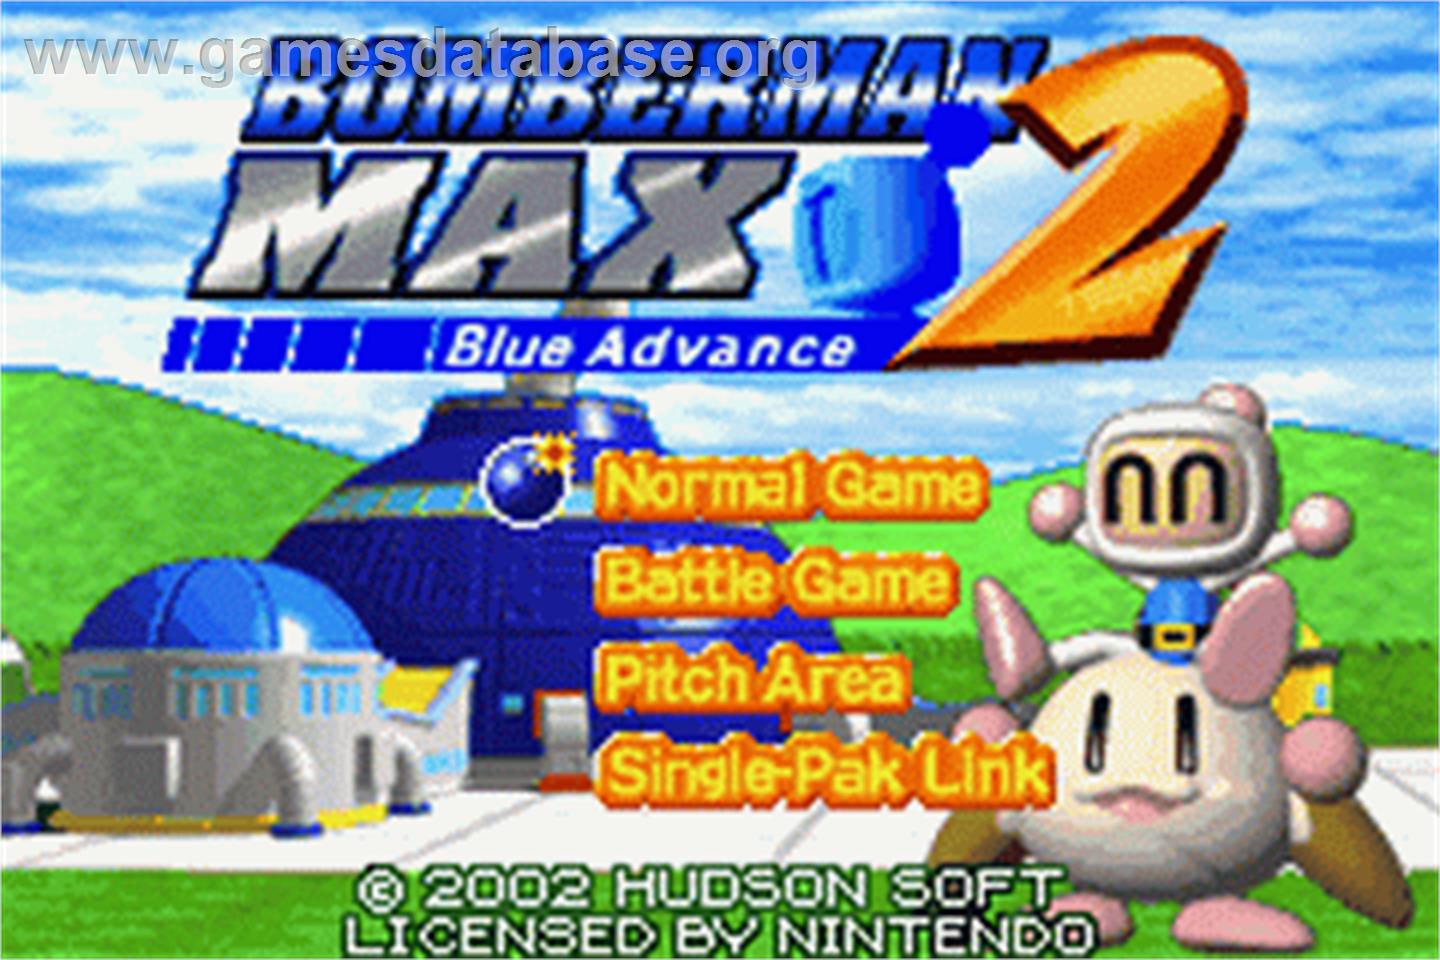 Bomberman Max 2: Blue Advance - Nintendo Game Boy Advance - Artwork - Title Screen